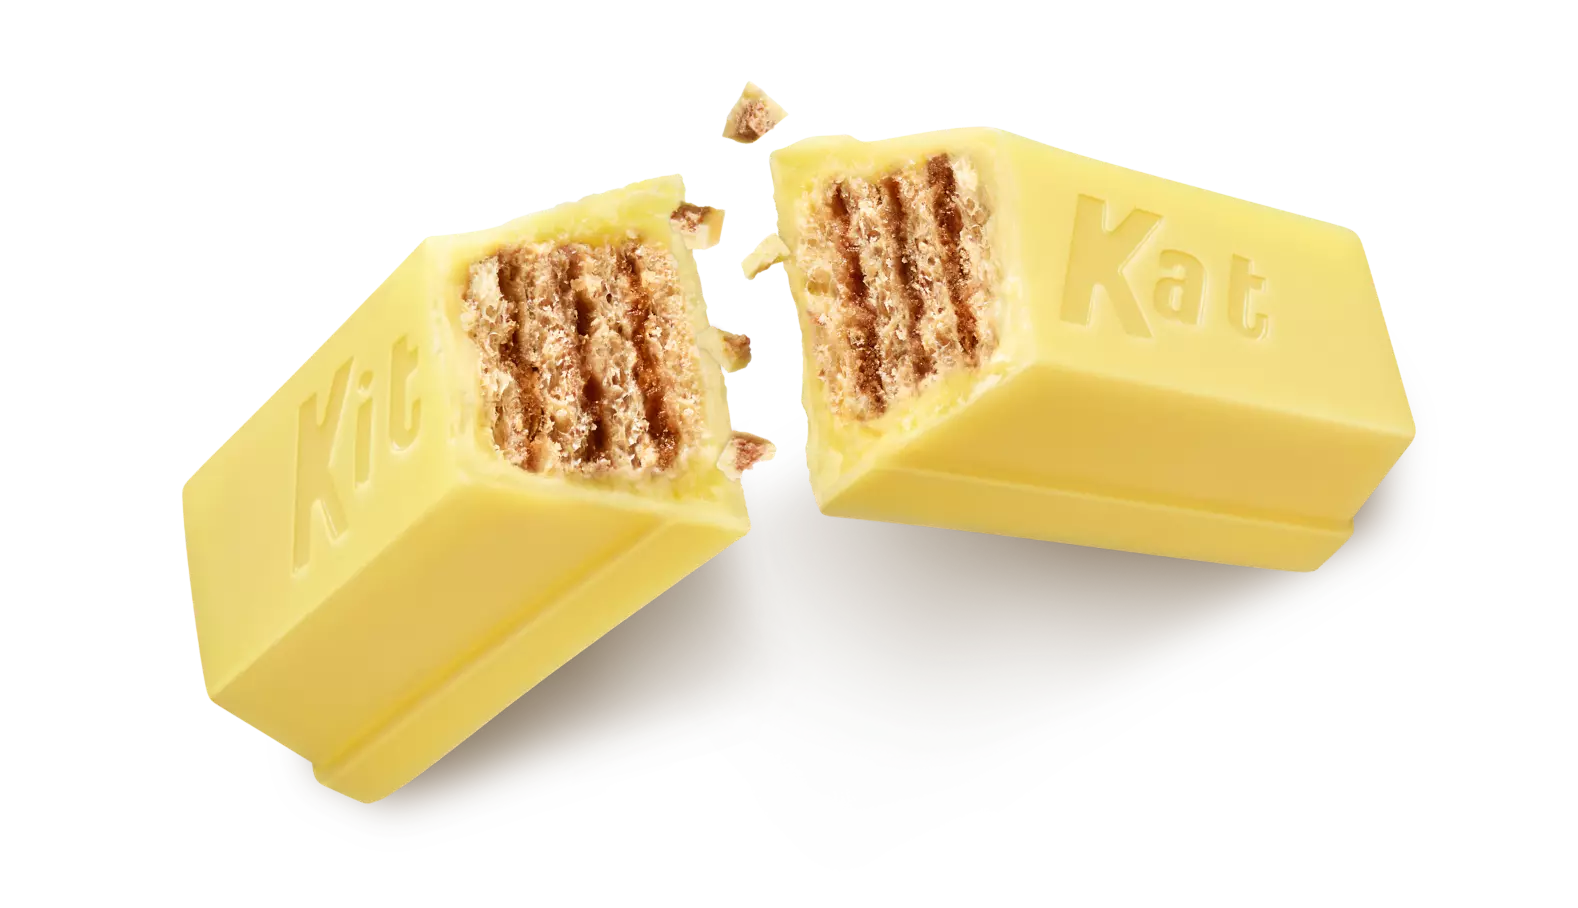 KIT KAT® Lemon Crisp Candy Bar, 1.5 oz - Out of Package